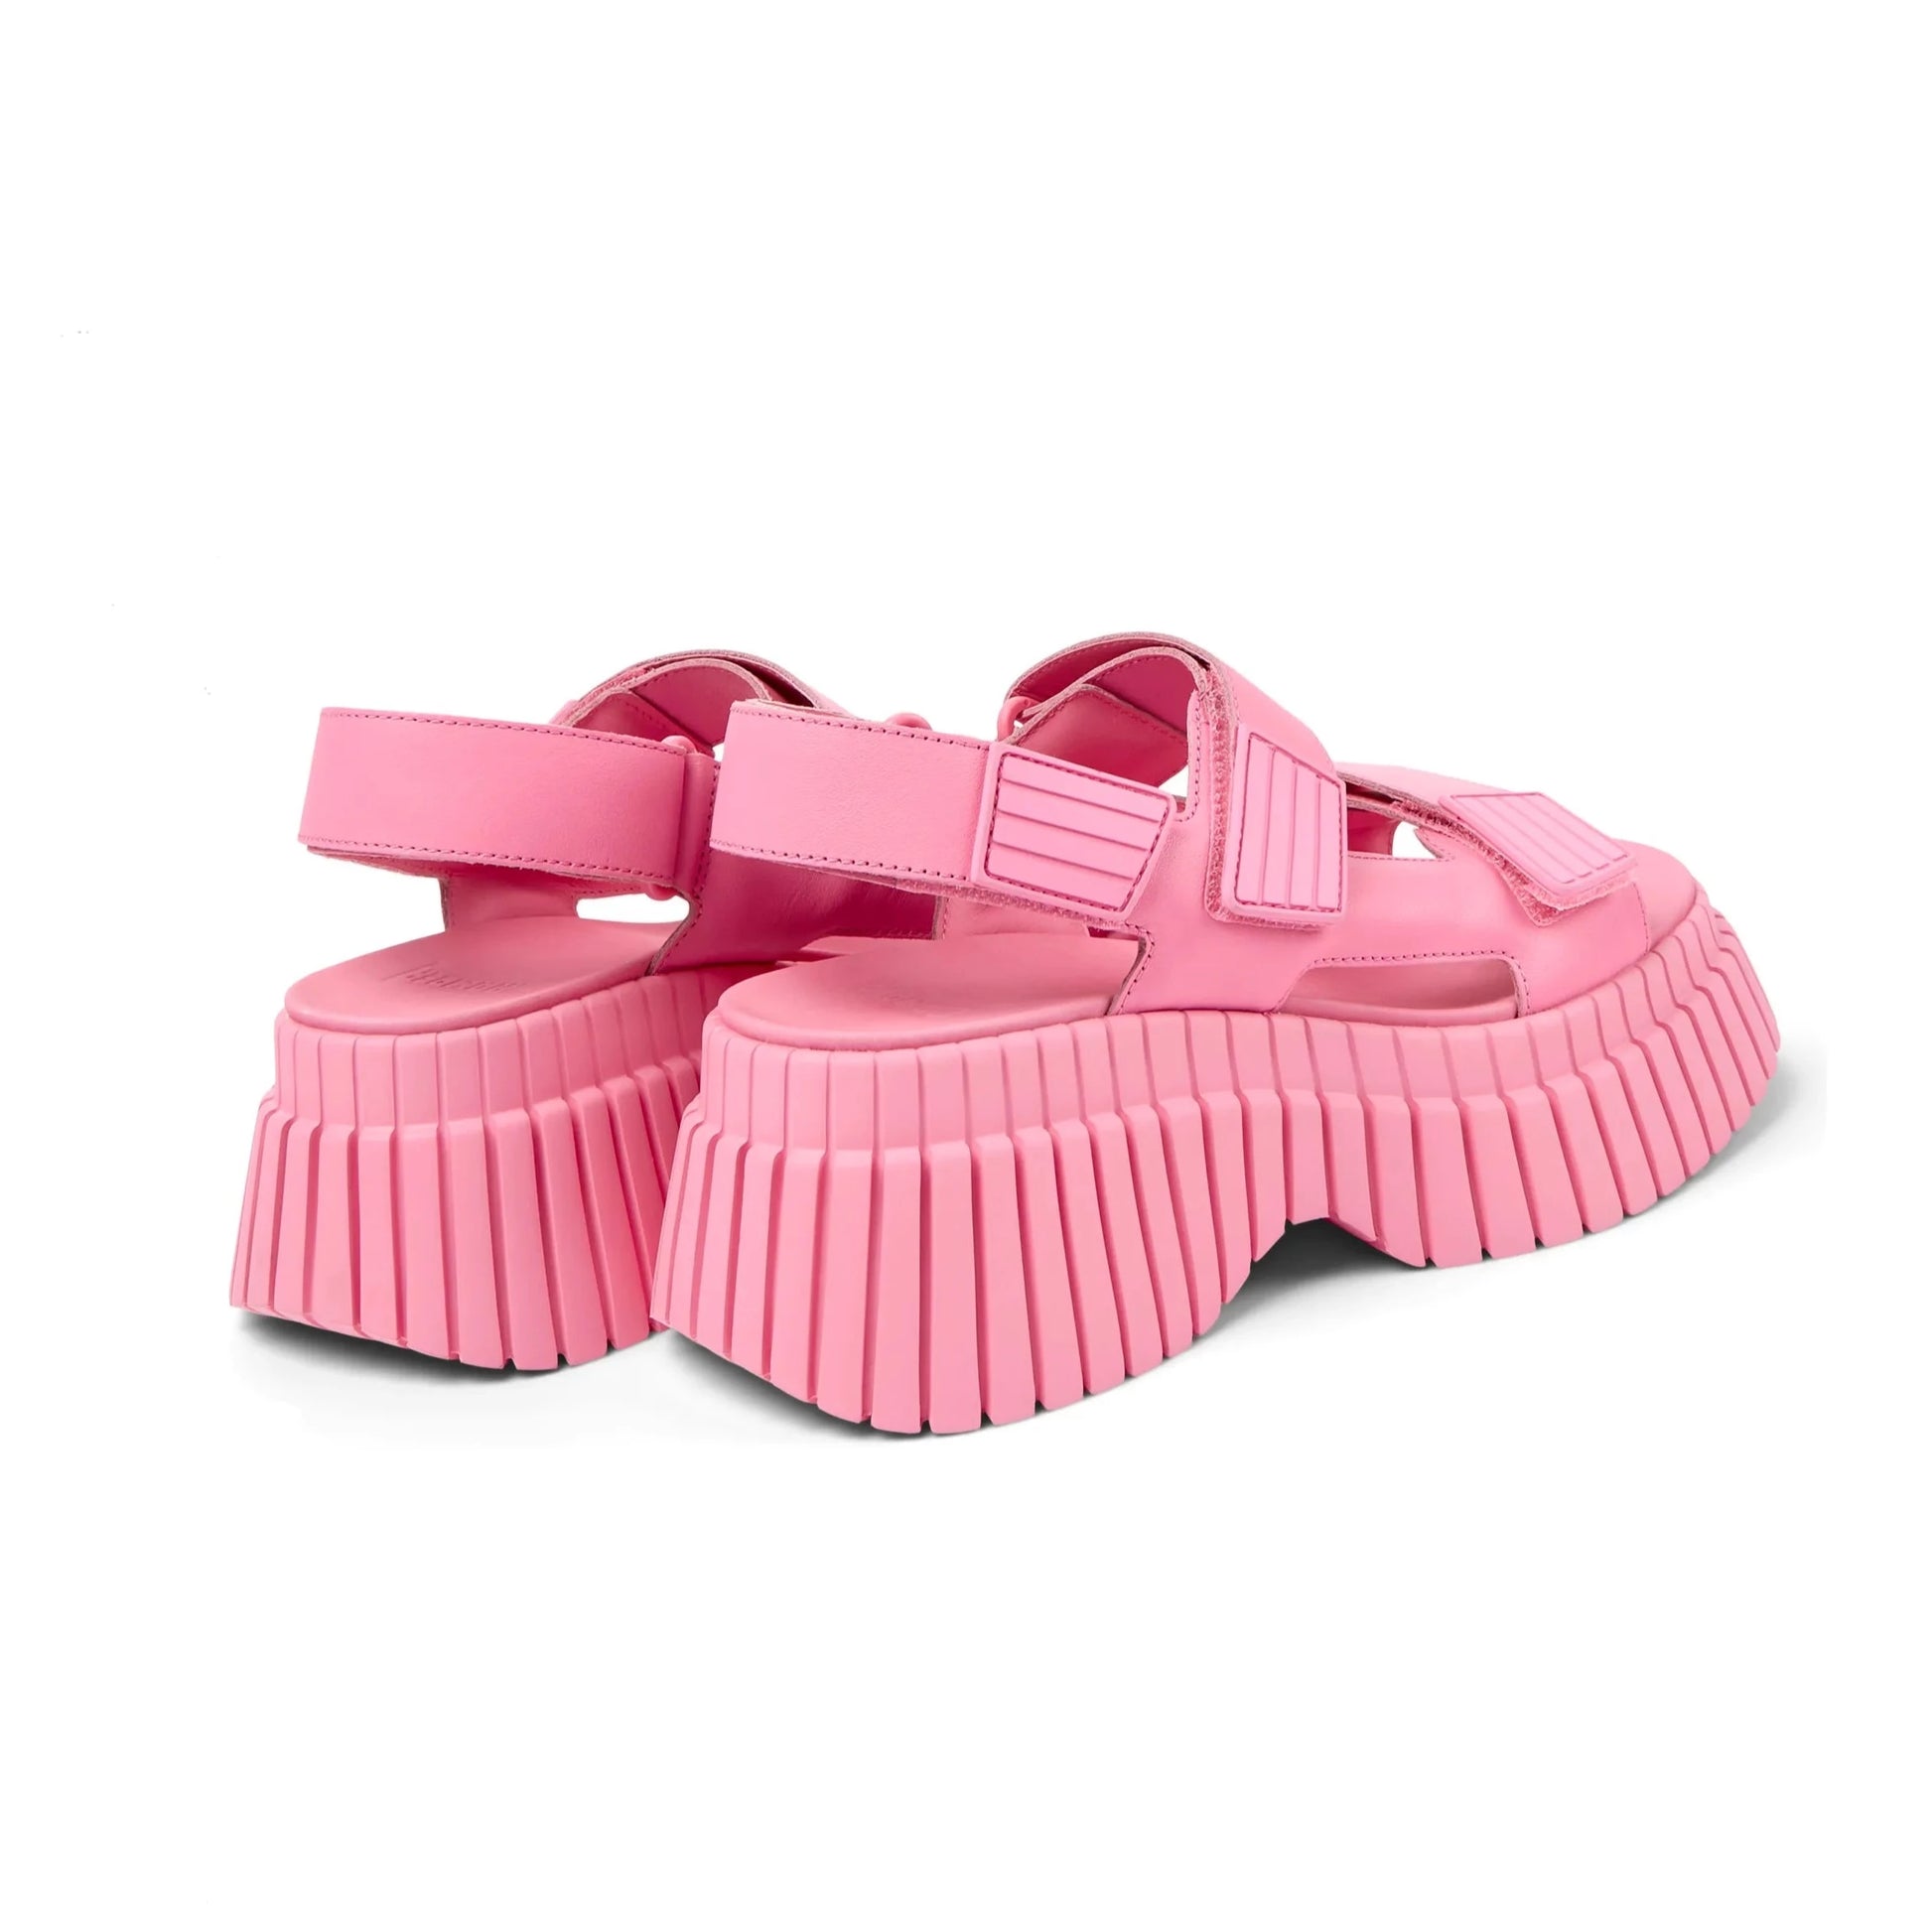 Sandalias De La Marca Camper Para Mujer Modelo Bcn En Color Rosa